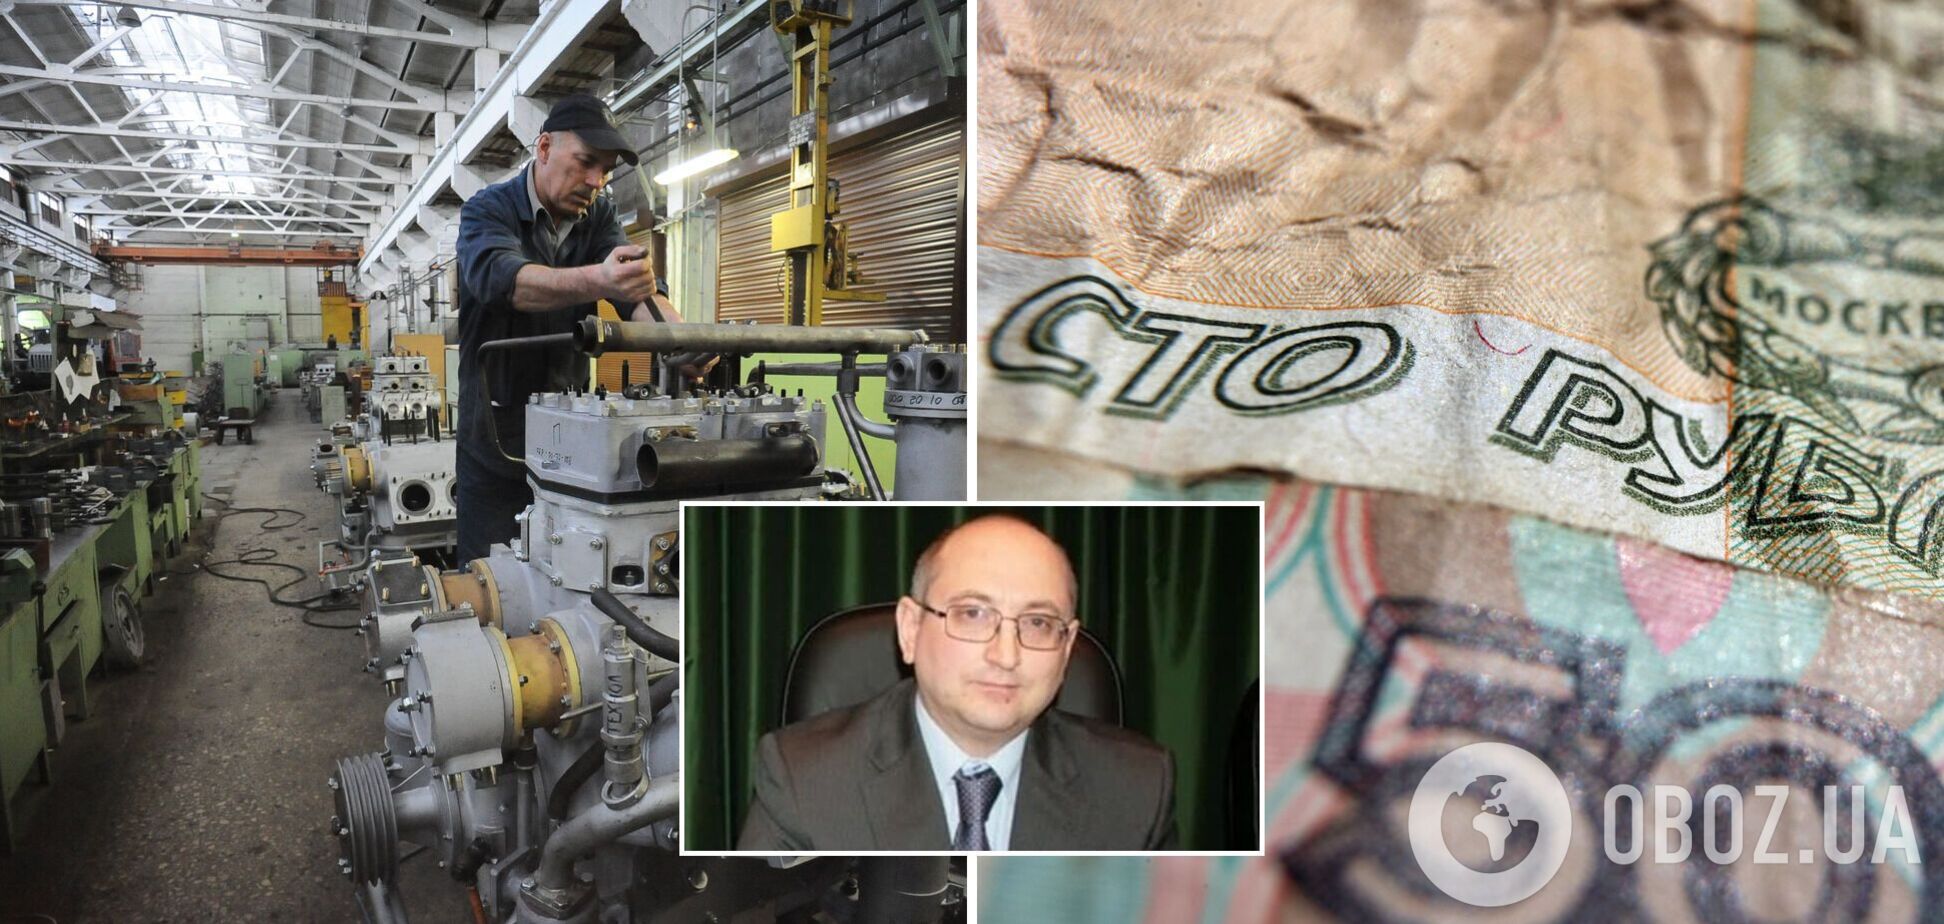 Директор завода на Урале считает, что рабочие не должны бастовать